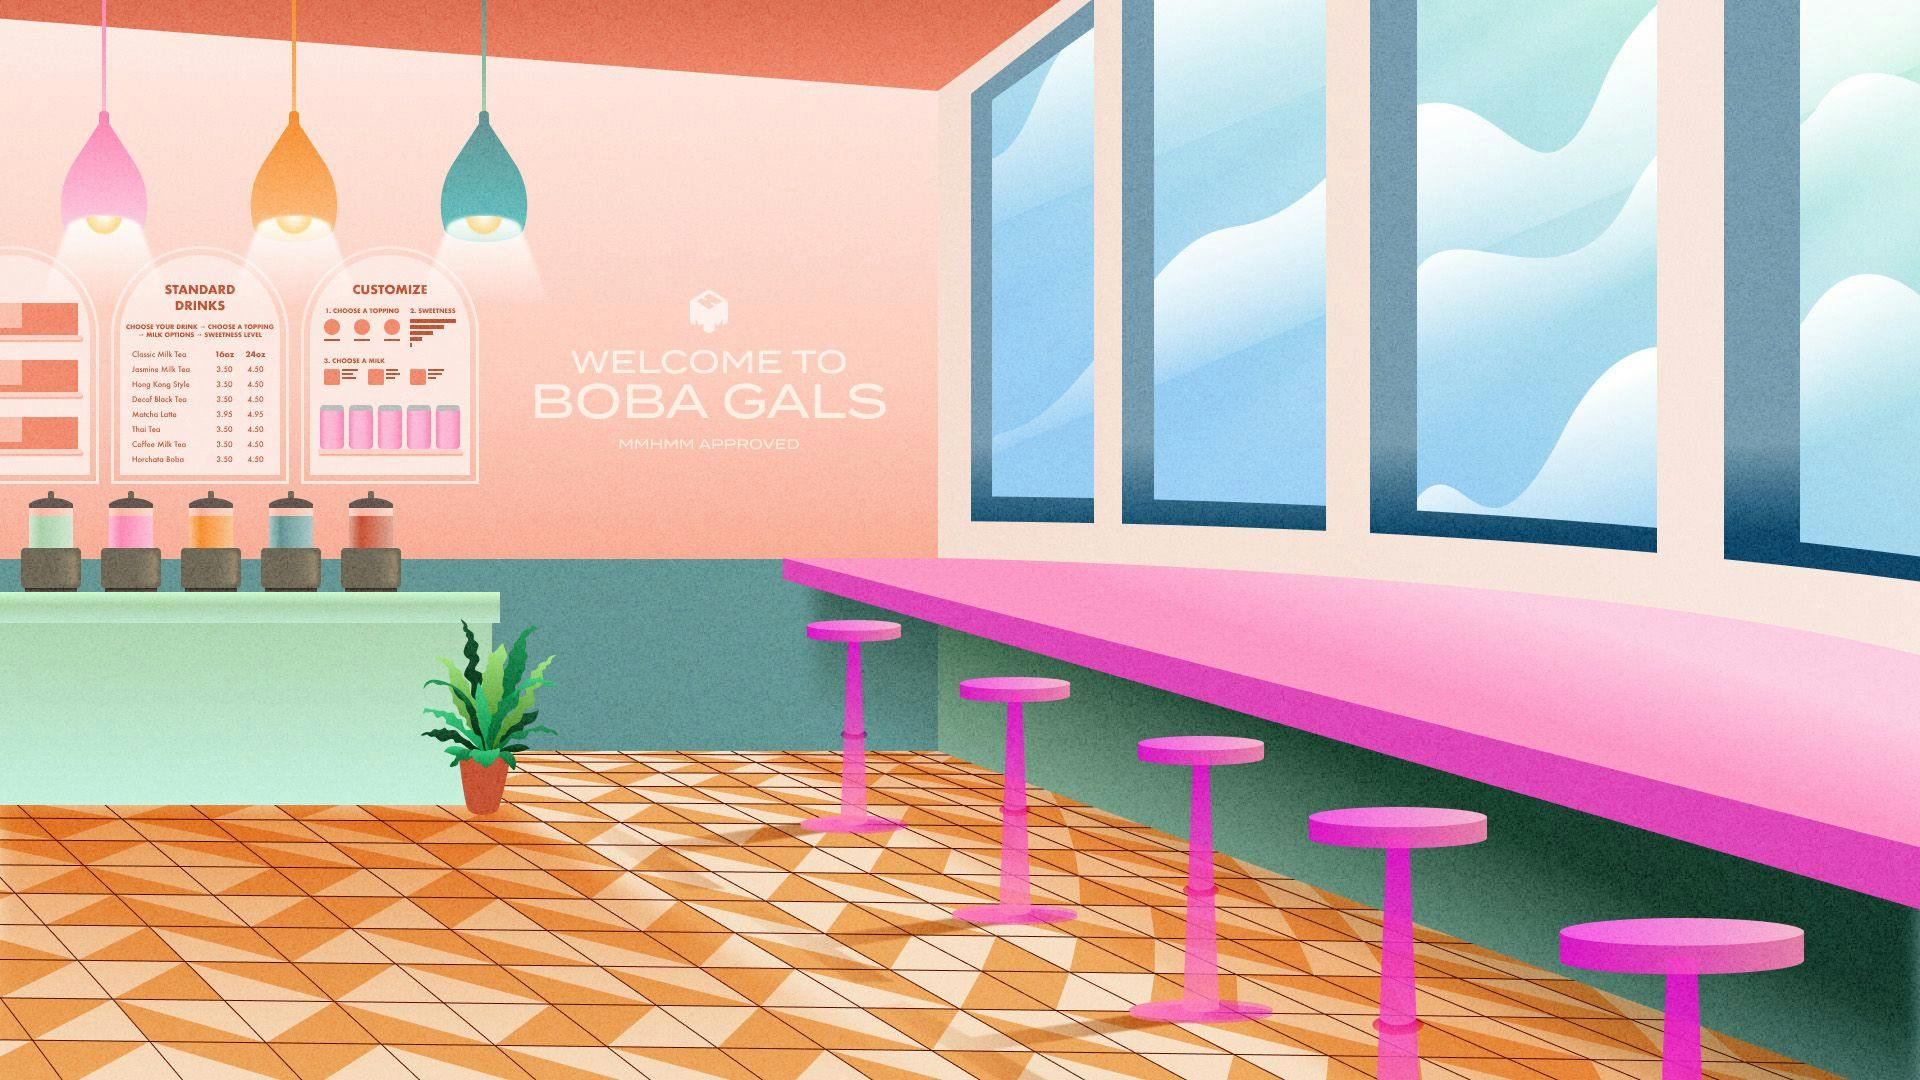 ピンクの椅子とカウンターやブレンダーと「BOBA GALS へようこそ」のサインがあるボバティーショップのイラスト